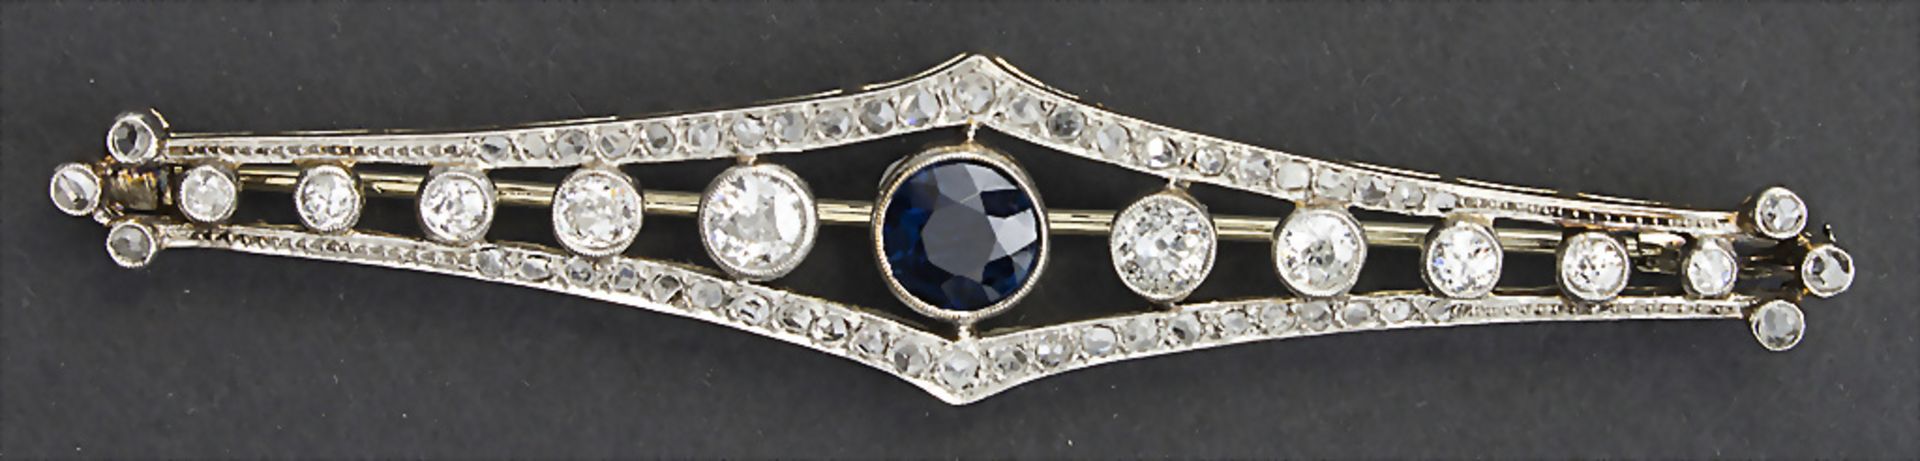 Art Déco Brosche mit Saphiren und Diamanten / An Art Déco brooch with Sapphires and Diamonds, ...